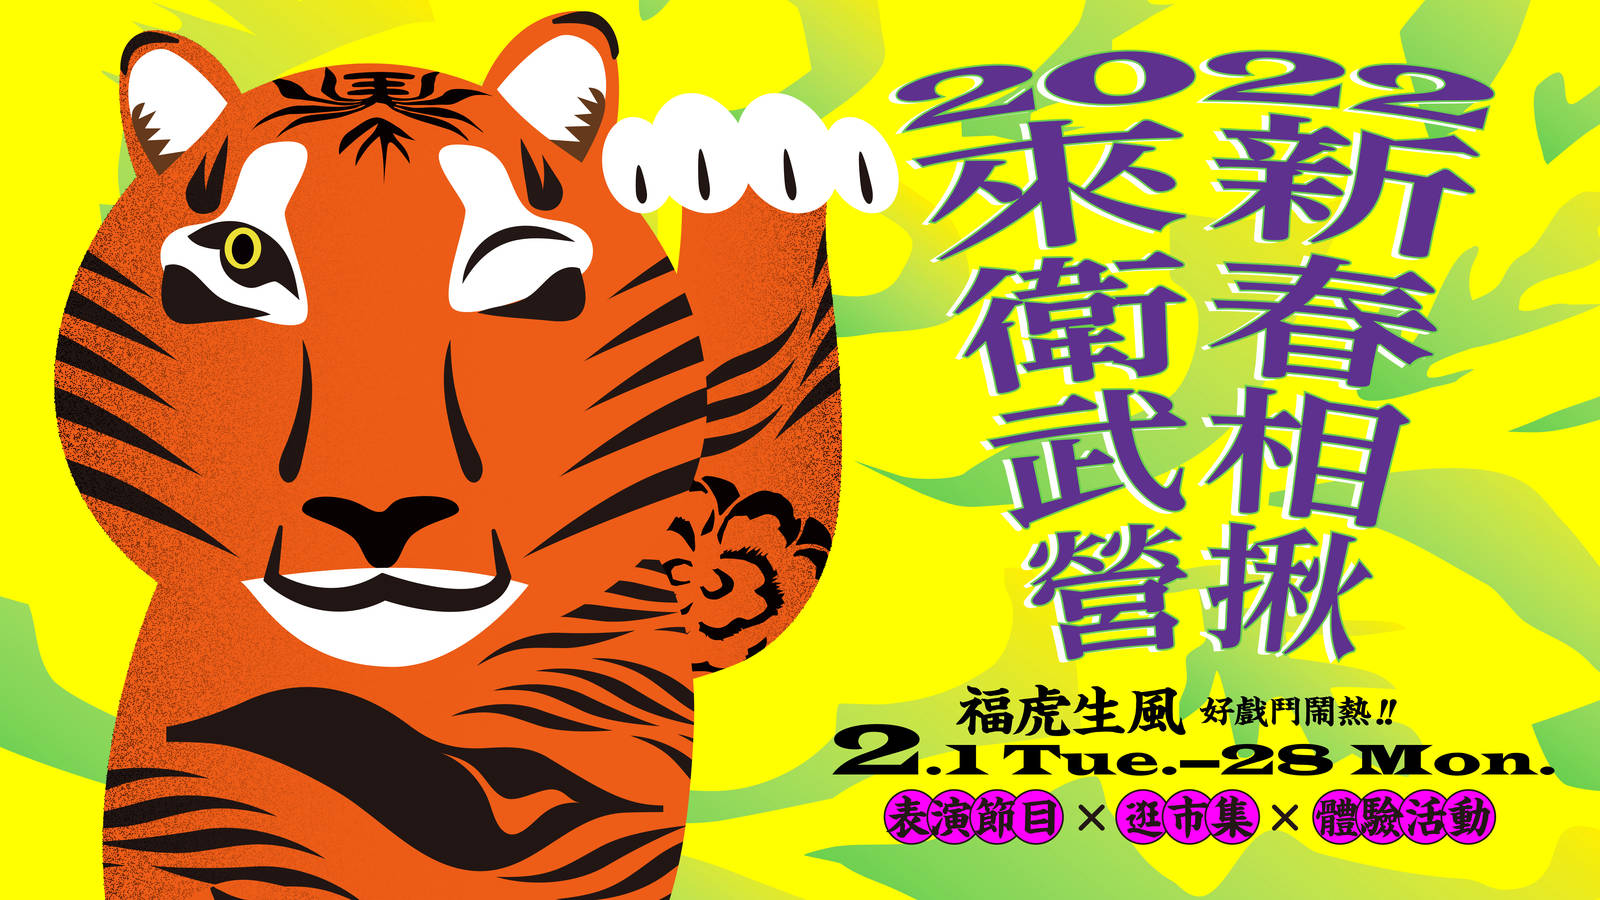 2022衛武營新春燈會系列| 衛武營國家藝術文化中心National Kaohsiung 